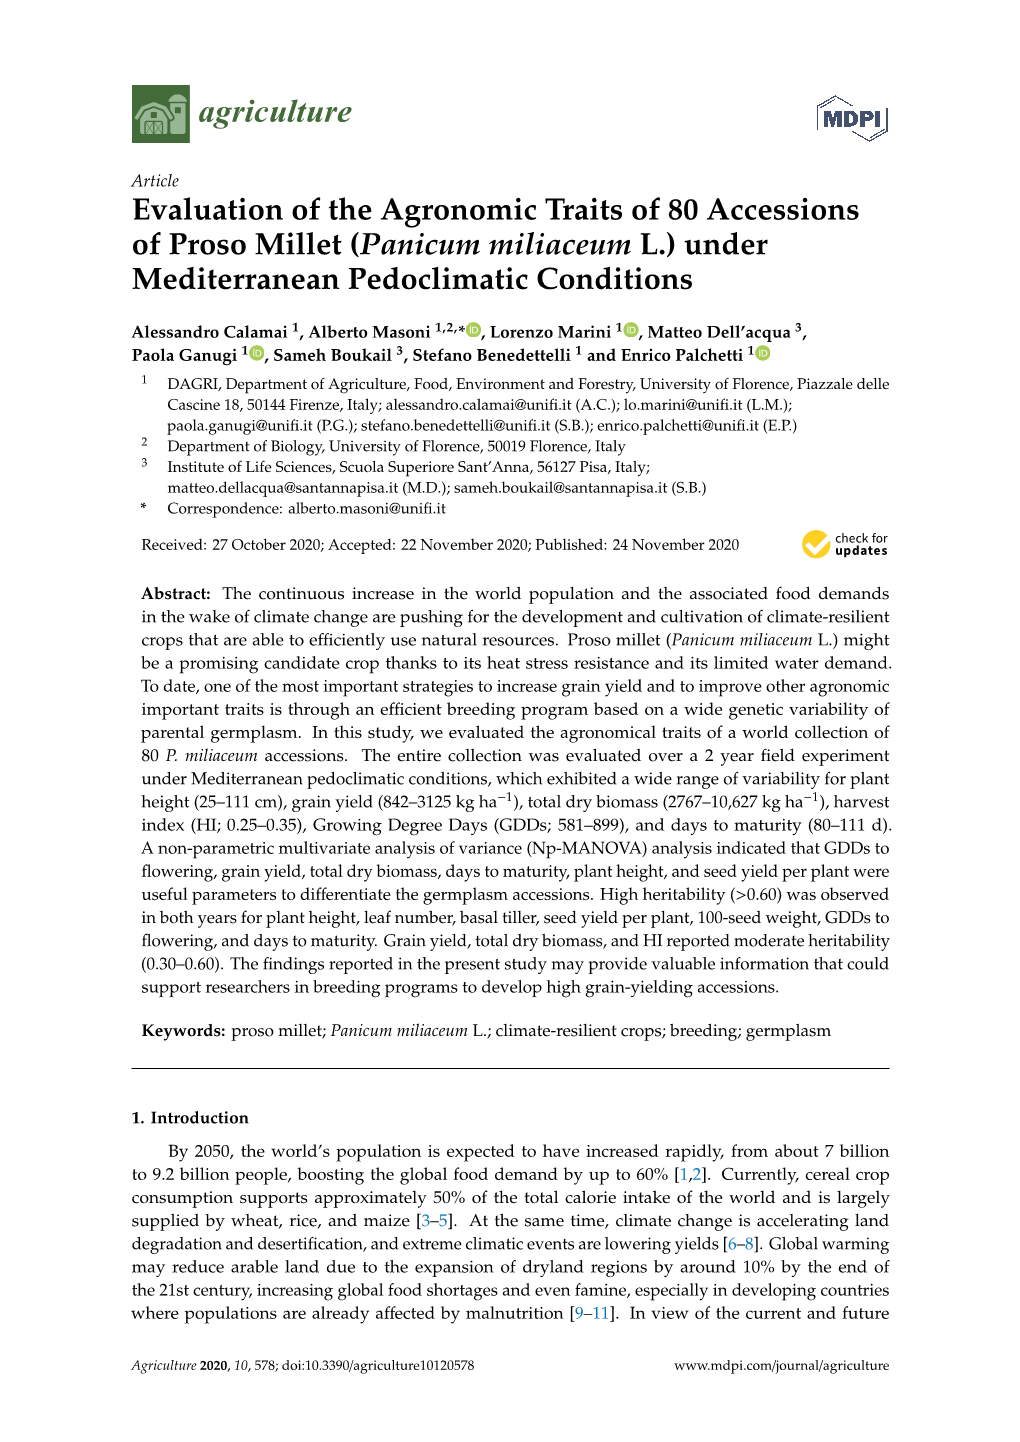 Panicum Miliaceum L.) Under Mediterranean Pedoclimatic Conditions